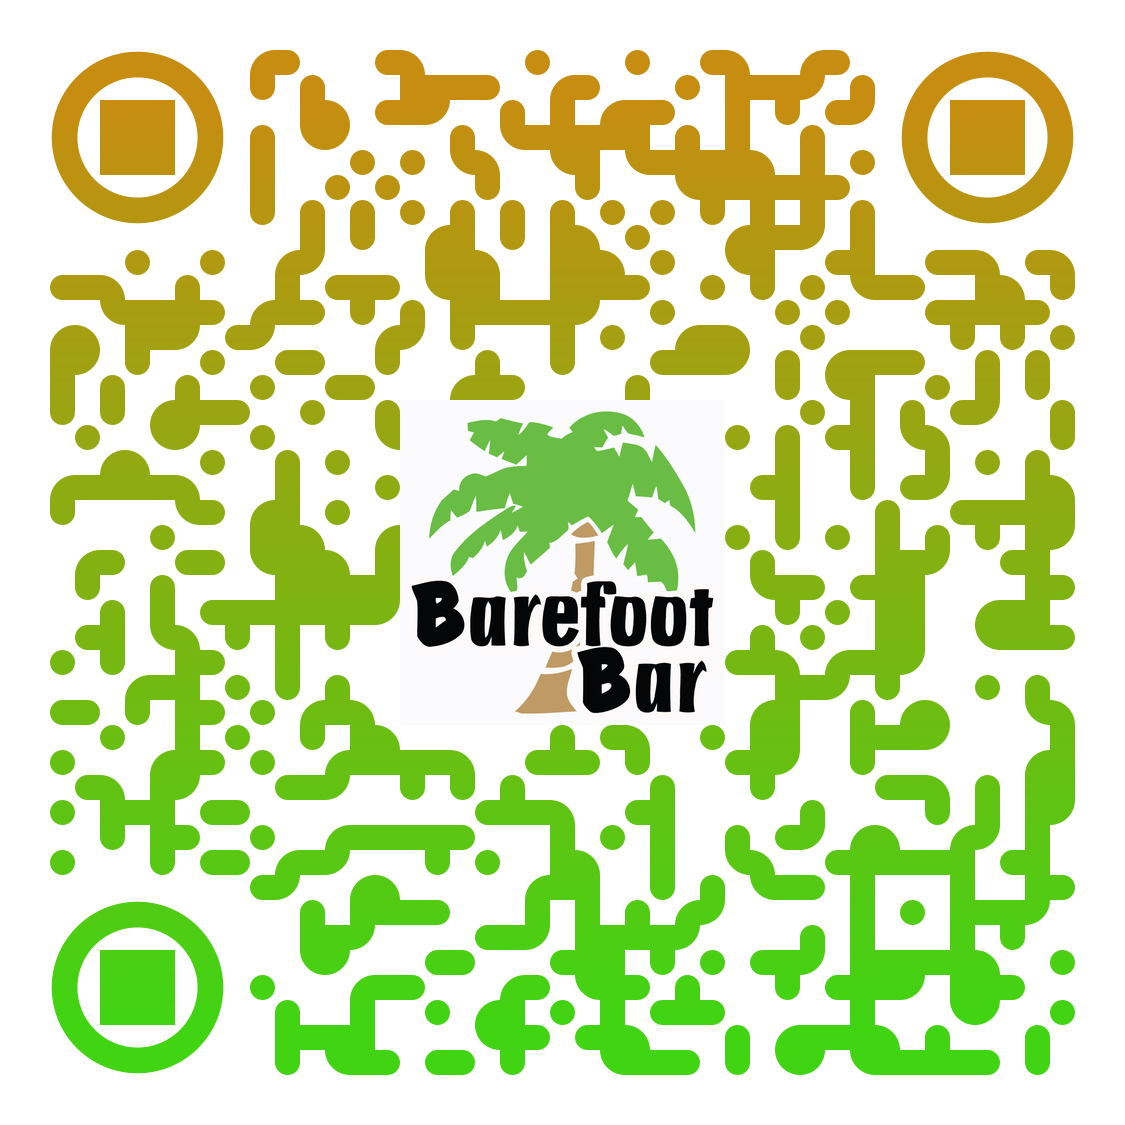 Barefoot Bar QR Code.png